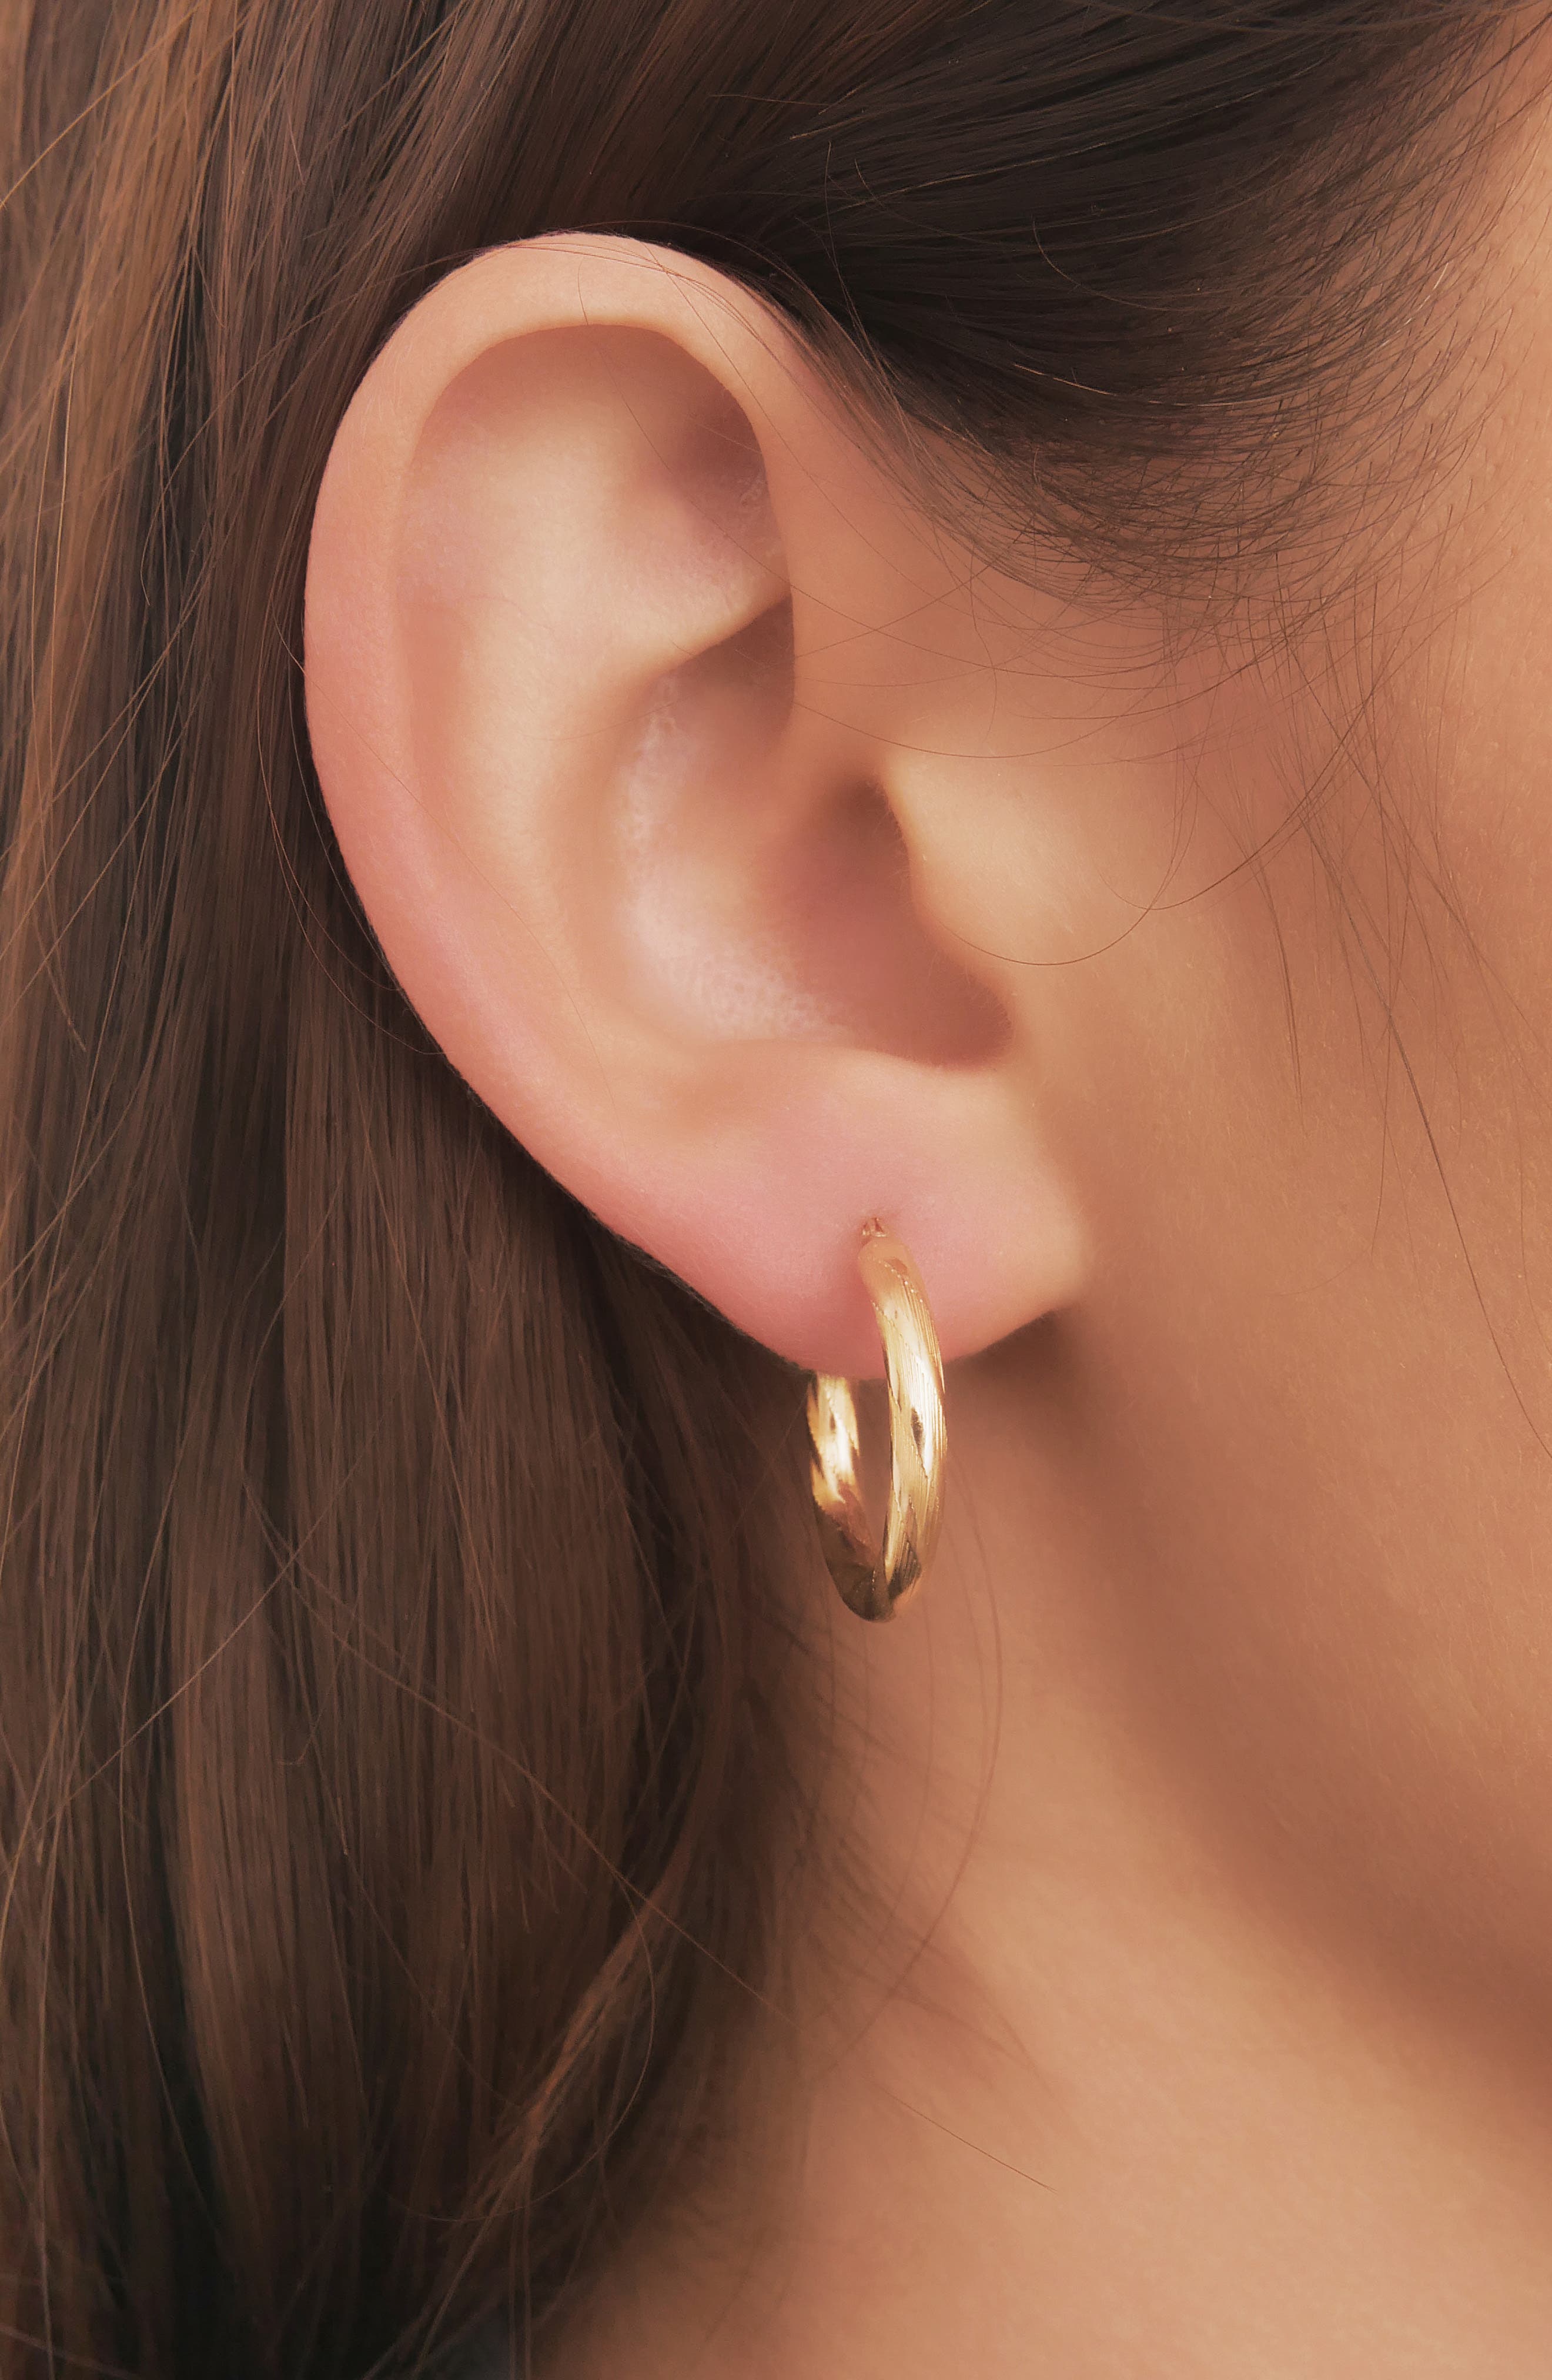 14k White Gold Textured Hoop Earrings